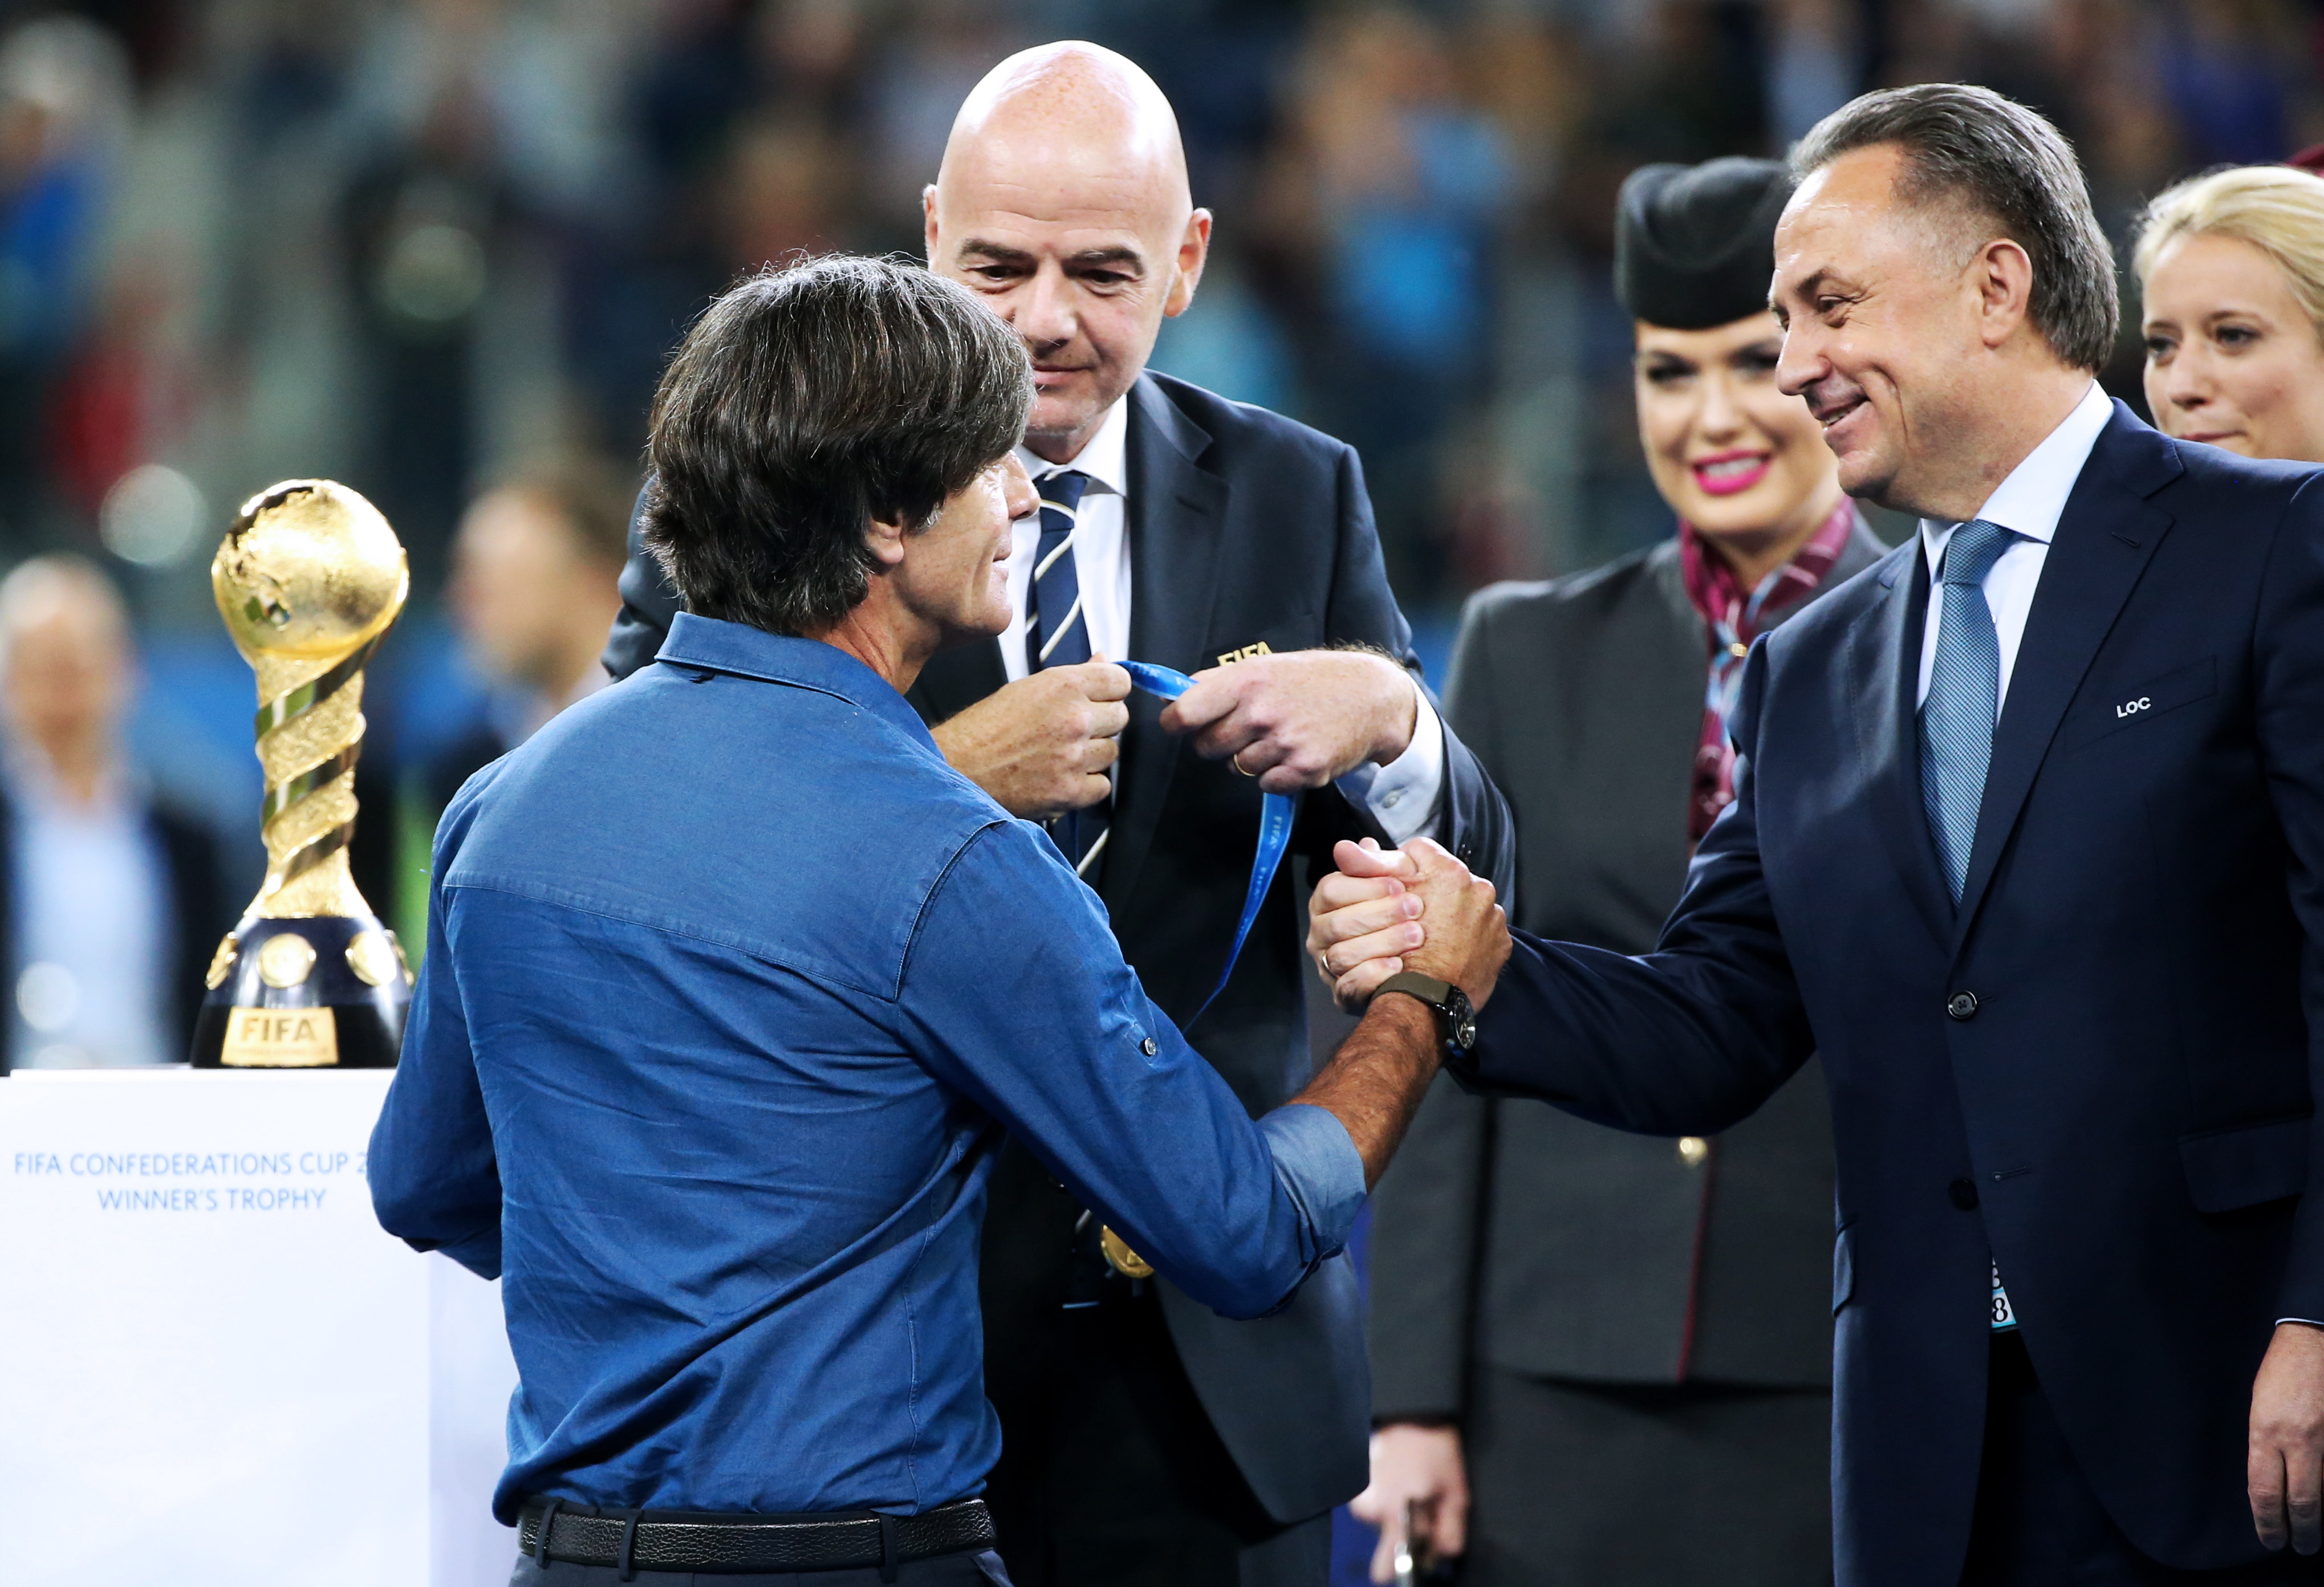 Главный тренер сборной Германии Йоахим Лев (крайний слева) получает поздравления от президента ФИФА Джанни Инфантино (в центре) и главы РФС Виталия Мутко